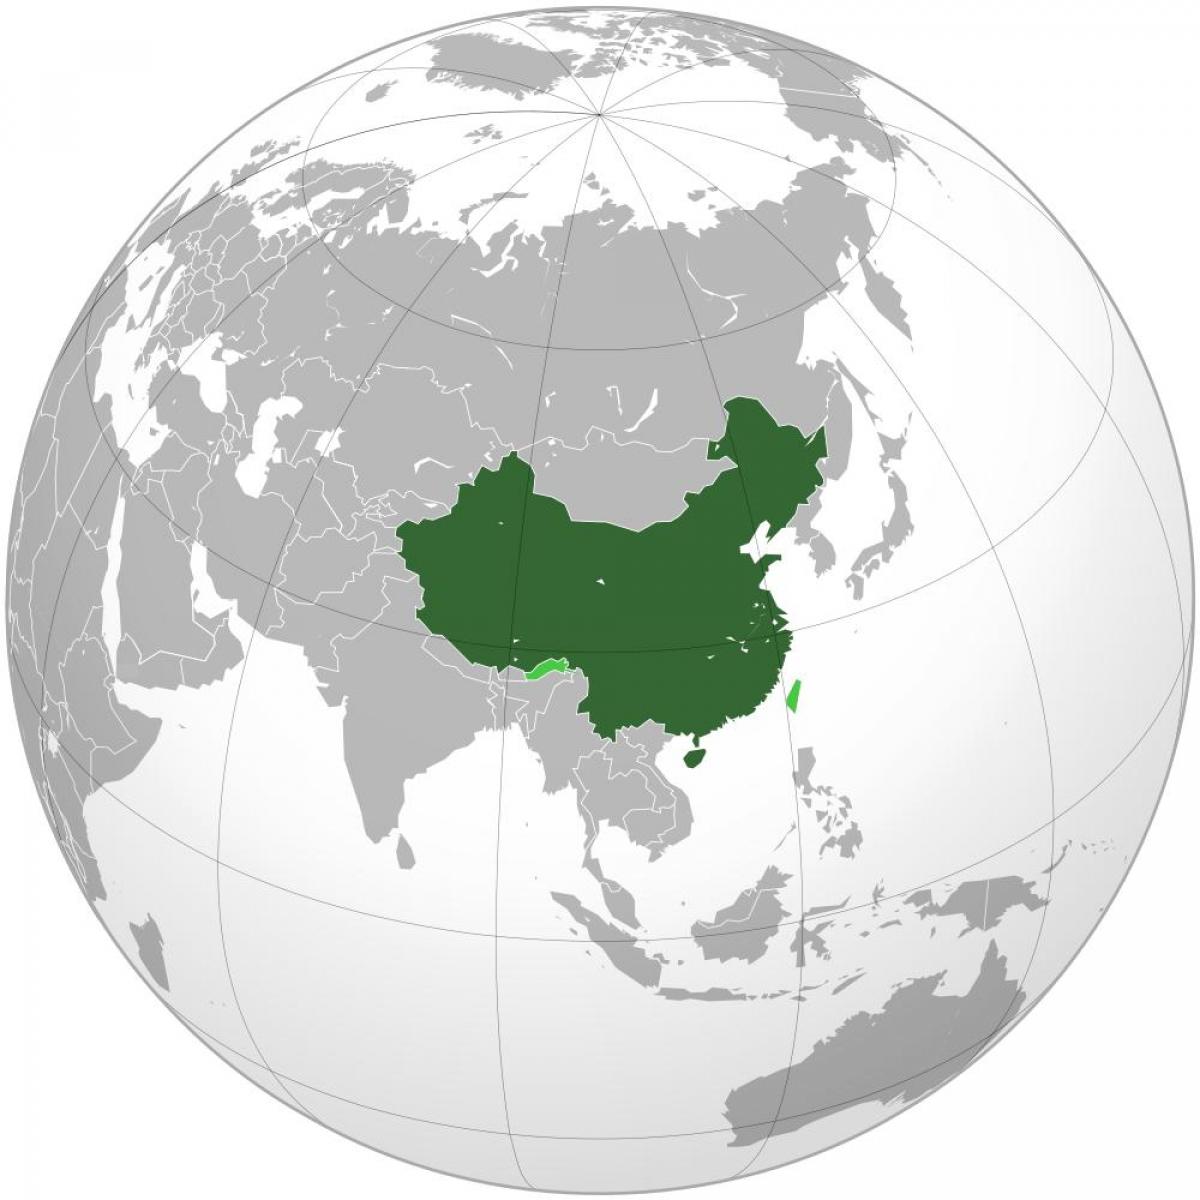 Cina peta dunia